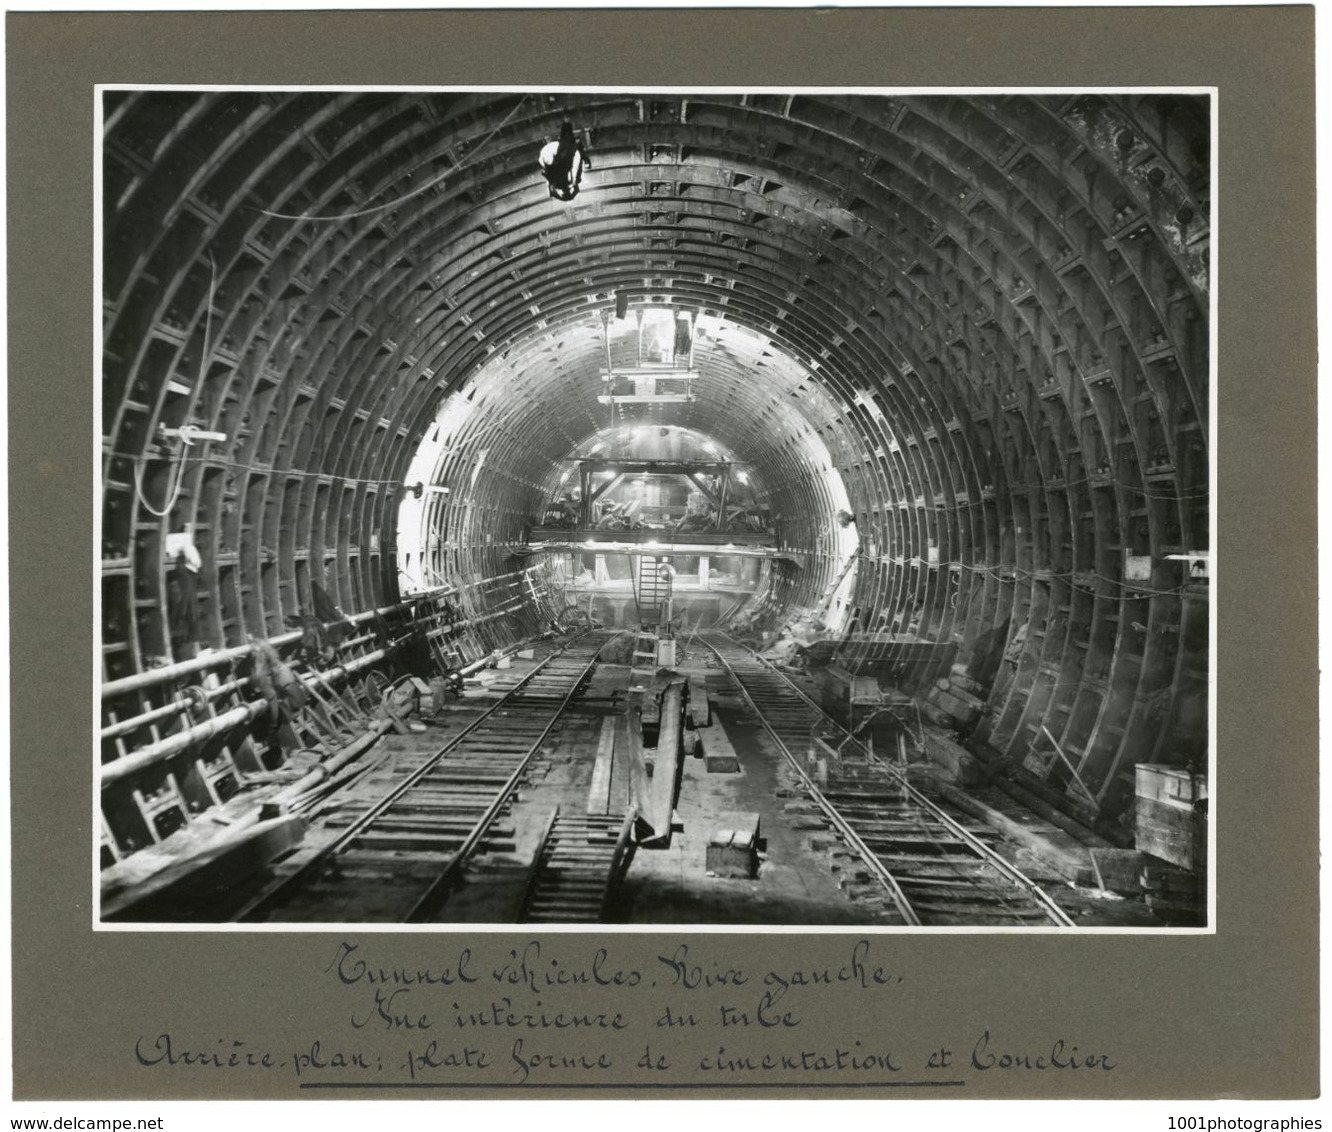 Anvers, Travaux du tunnel sous l'Escaut, finitions, éclairage, inauguration, 25 Tirages originaux d'époque. FG1748